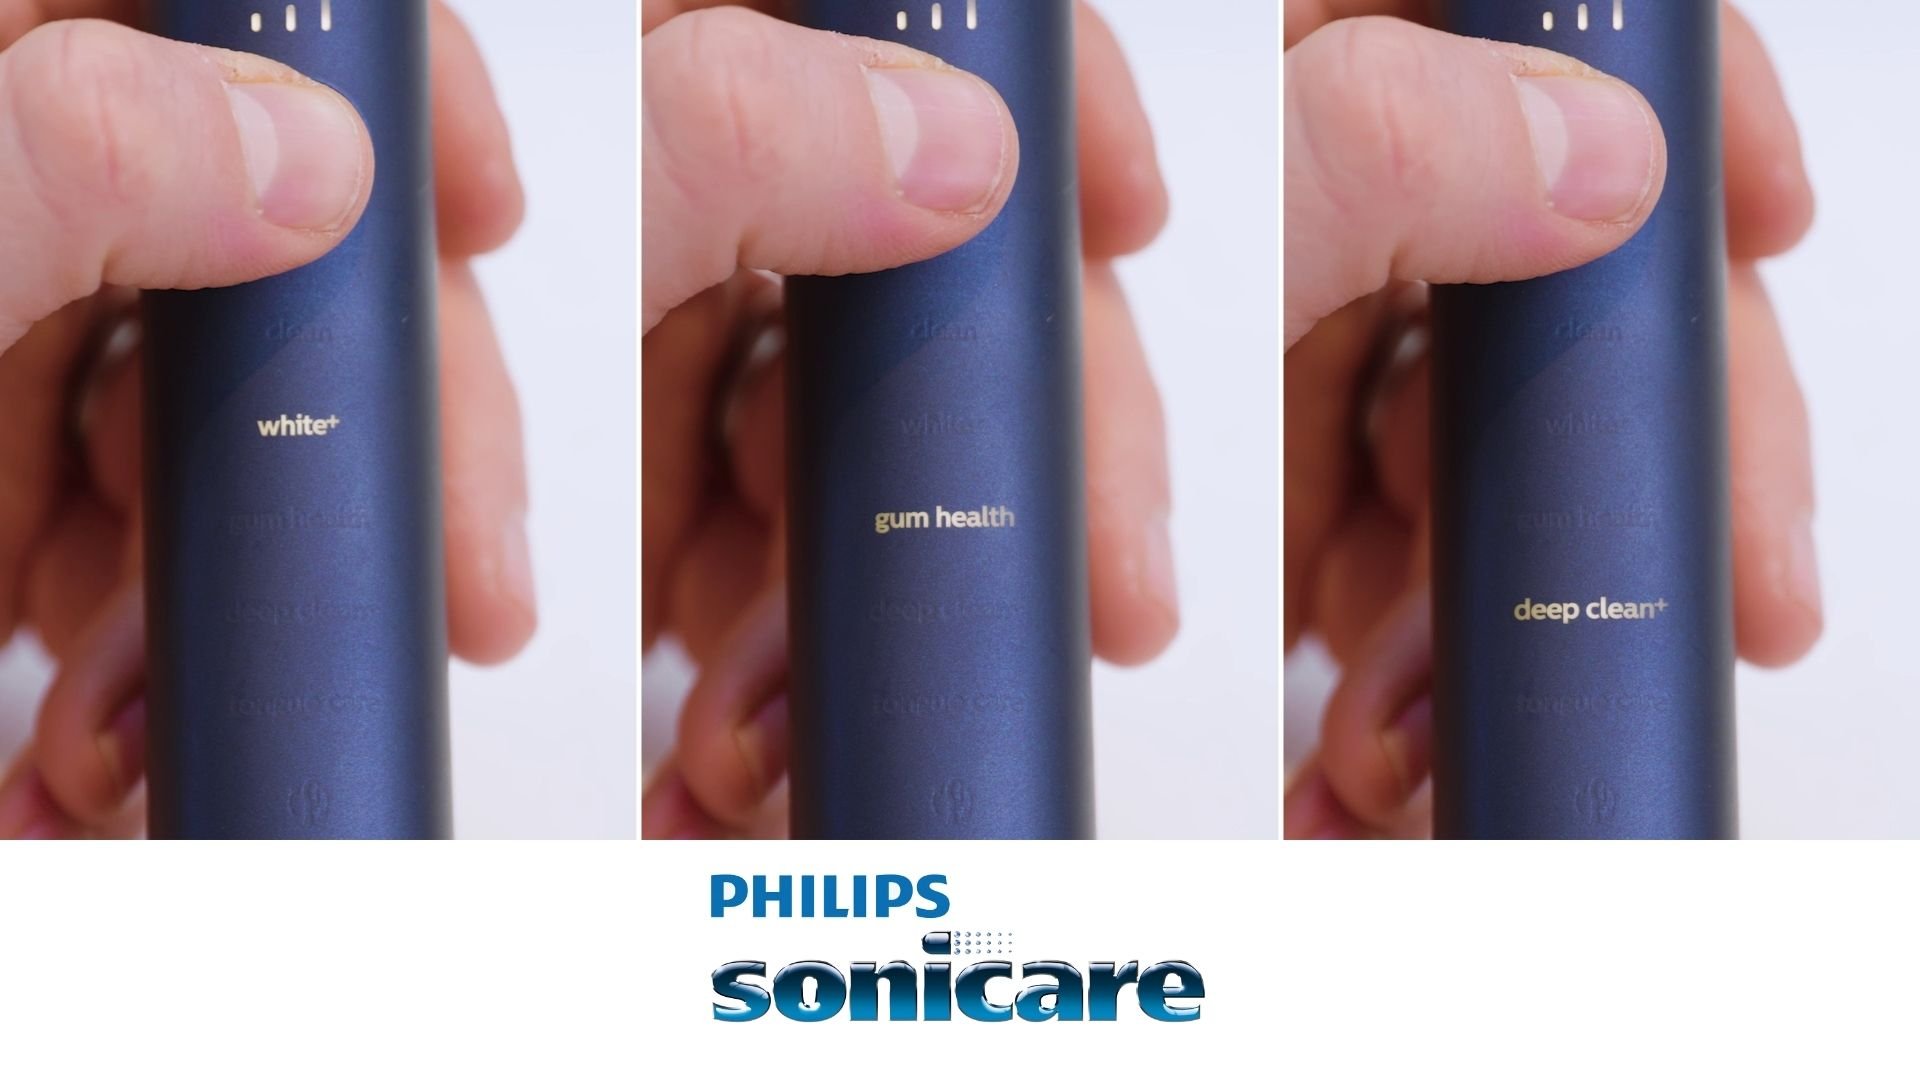 Philips Sonicare brushing modes explained 4